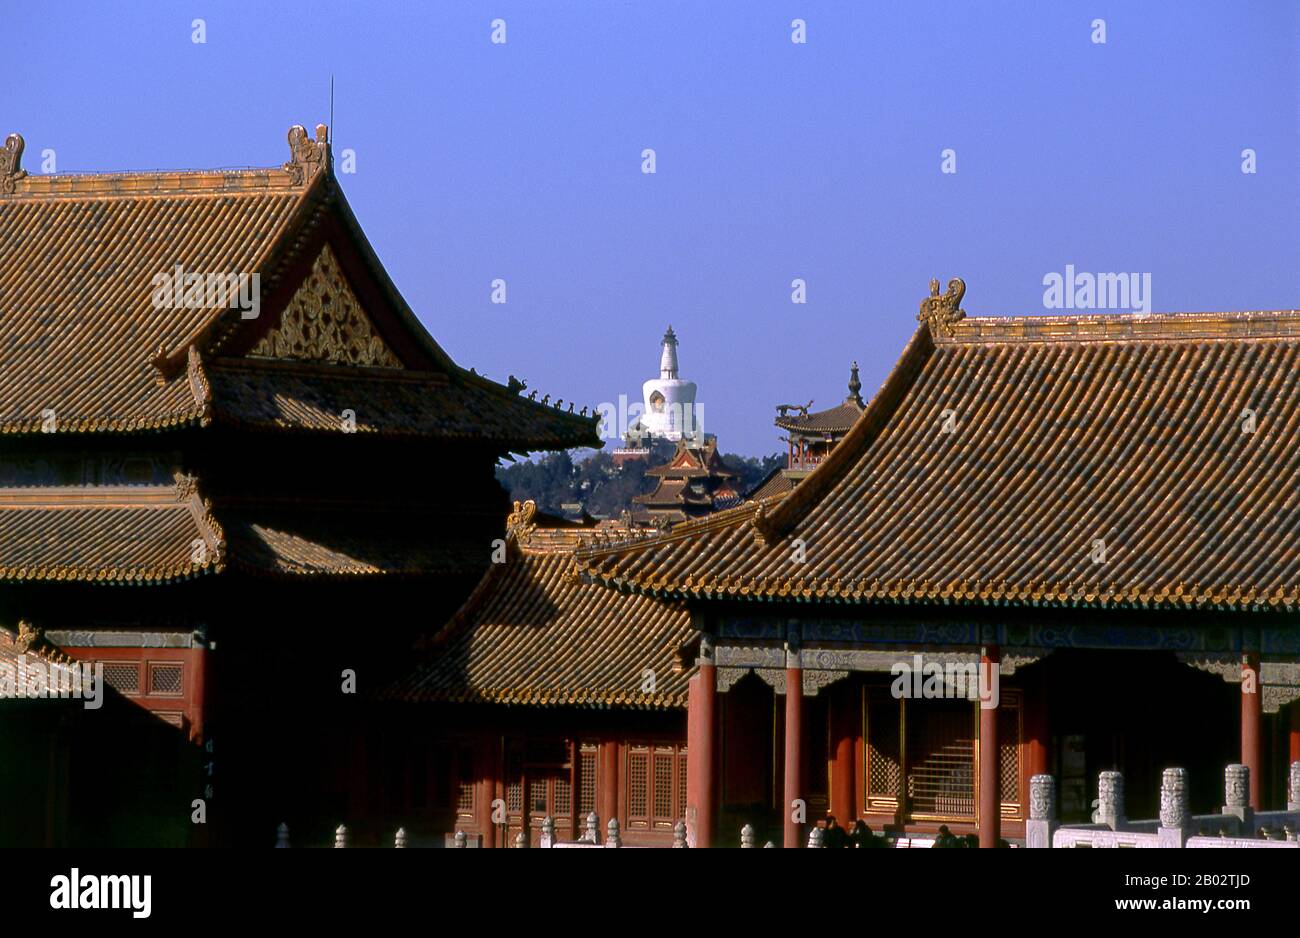 Die Zwischen 1406 und 1420 erbaute Verbotene Stadt diente 500 Jahre (bis zum Ende der Kaiserzeit im Jahre 1911) als Sitz aller Macht in China, als Thron des Himmelssohns und als Privatwohnung aller Kaiser der Ming- und Qing-Dynastie. Der Komplex besteht aus 980 Gebäuden mit 8.707 Schächten von Räumen und erstreckt sich über 720.000 m2. Das Weiße Dagoba (Bai Ta) ist ein tibetisch-buddhistischer Schrein, der 1651 zum Gedenken an den ersten Besuch eines Dalai Lama in Peking erbaut wurde. Stockfoto